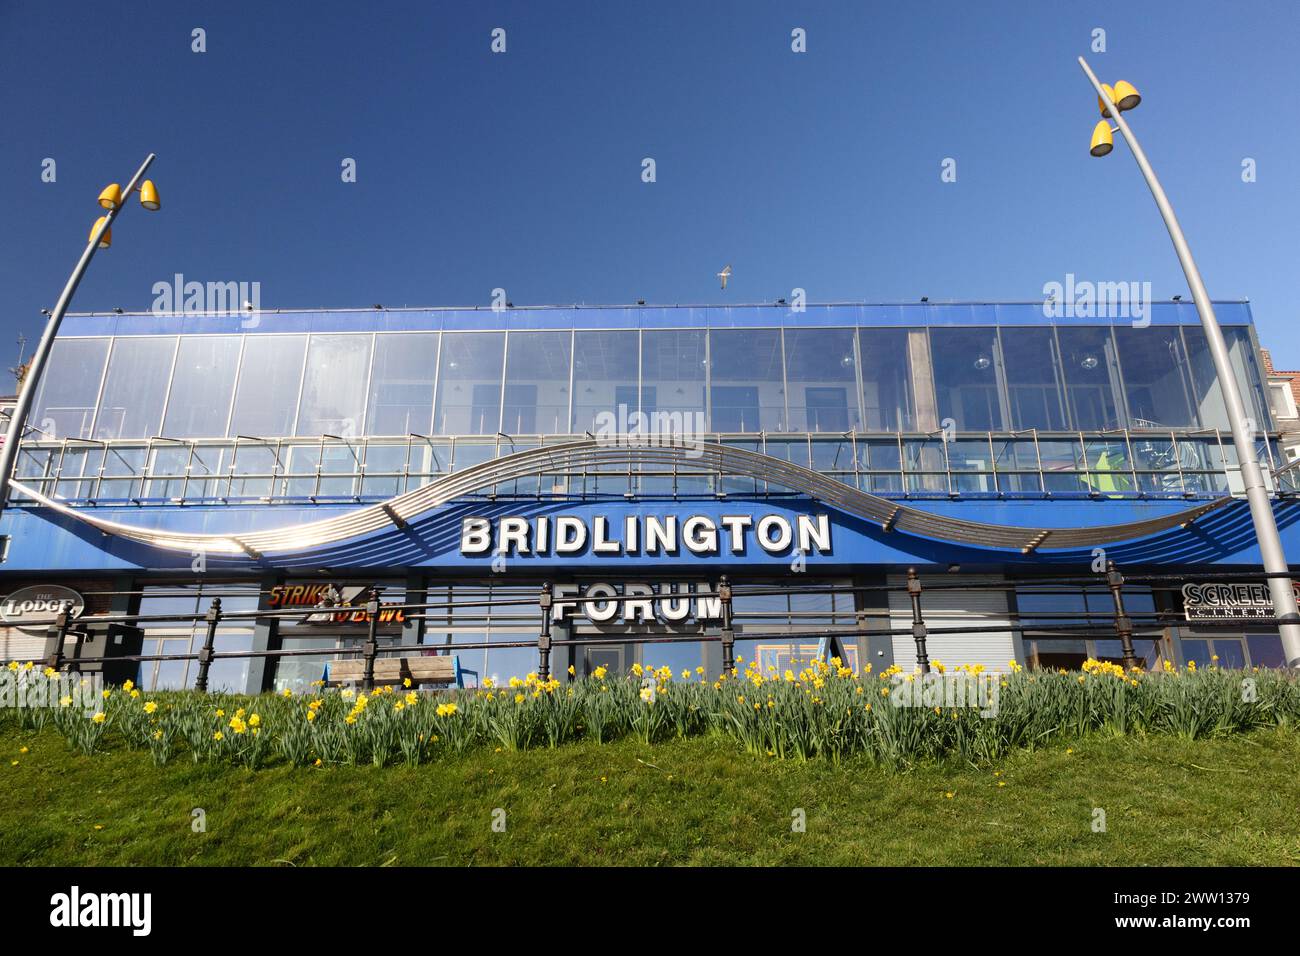 Bridlington, Yorkshire, UK Stock Photo